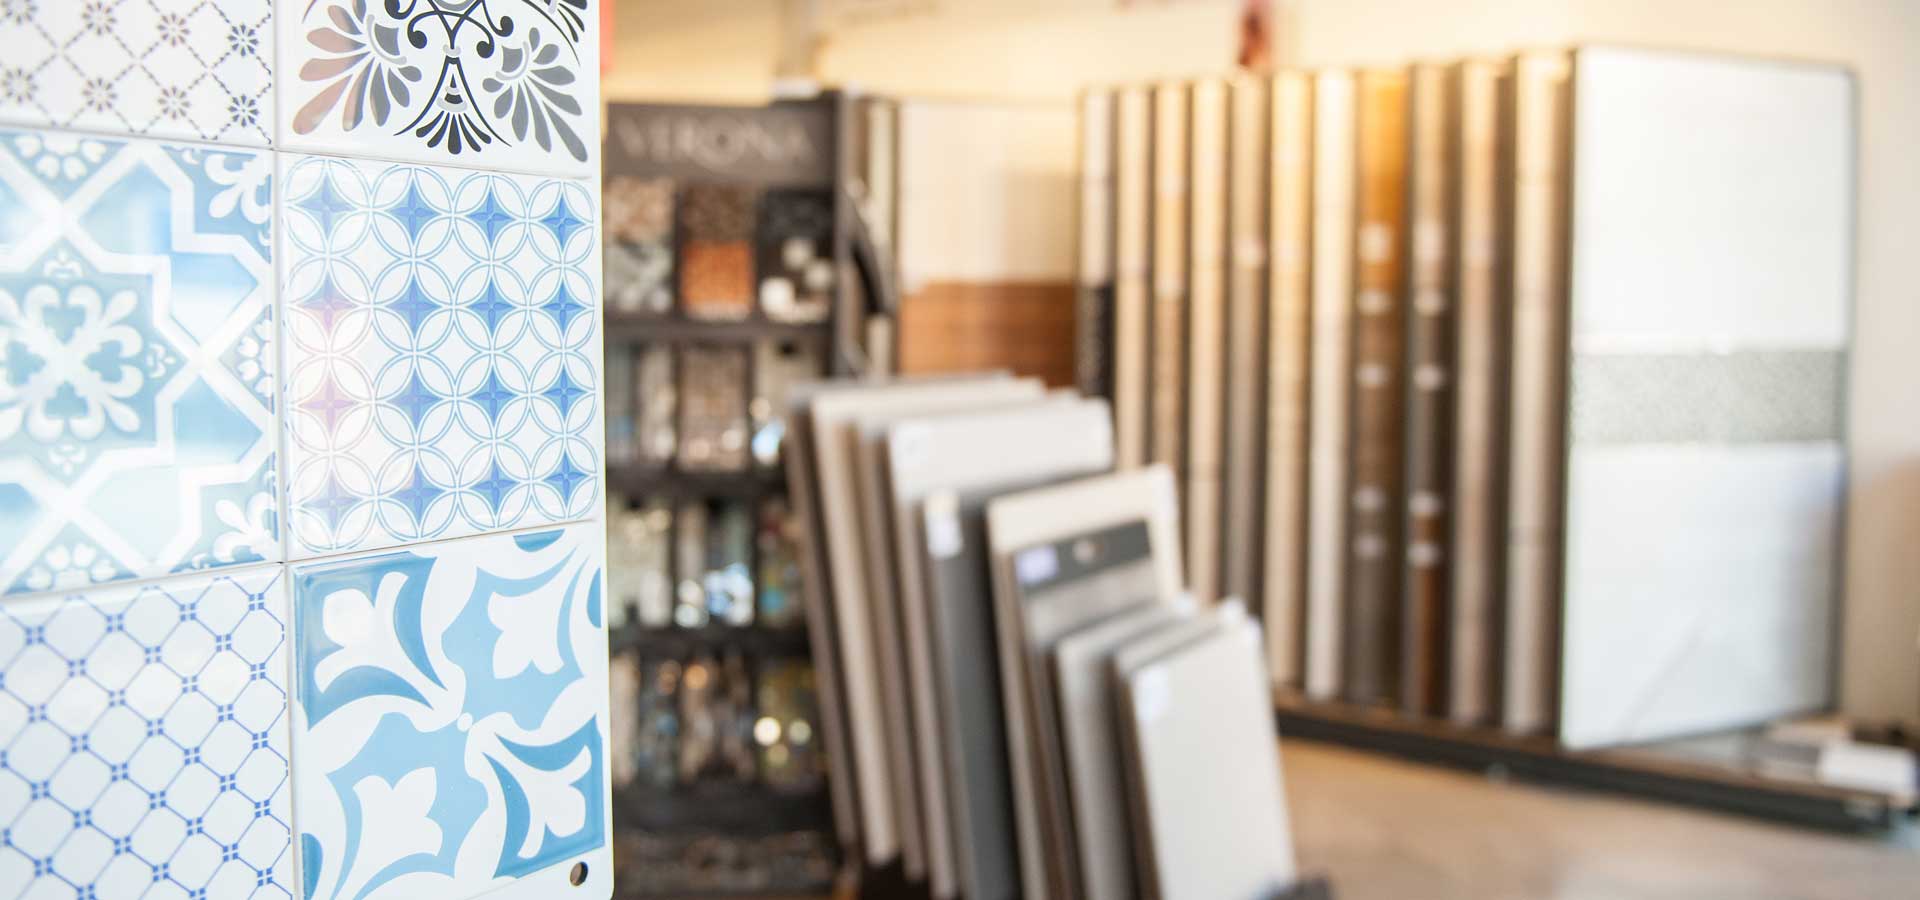 Maidenhead Spacers - Tile & Wood Flooring Showroom